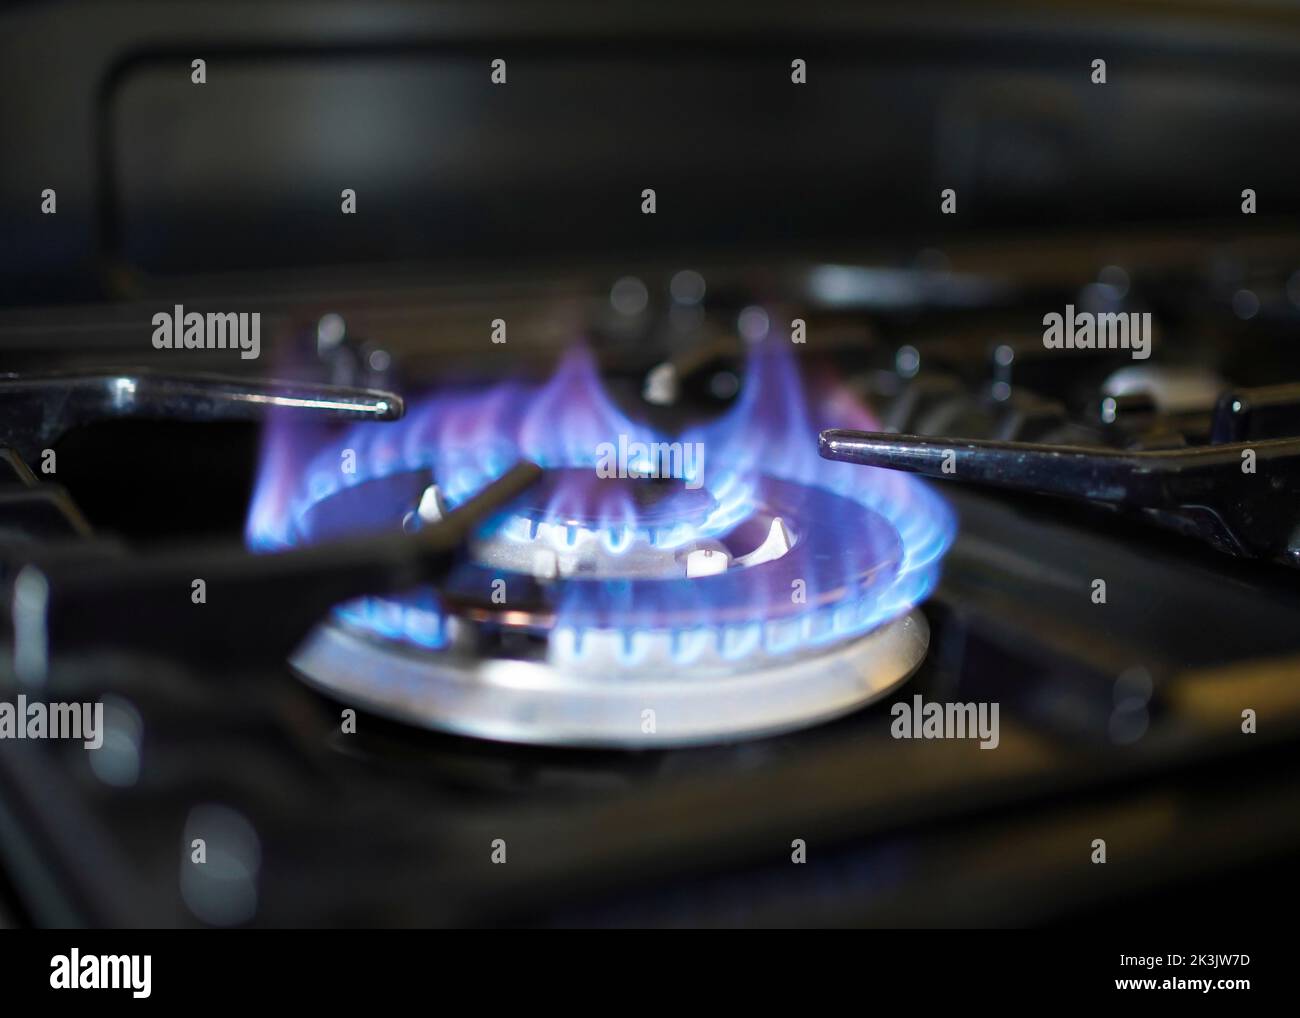 Rejilla De Estufa De Cocina En Un Quemador Alimentado Por Gas Natural  Combustible O Gas De Síntesis, Propano, Butano. Cocina Como Calentador.  Despilfarro De Recursos Naturales. La Llama Azul De La Encimera